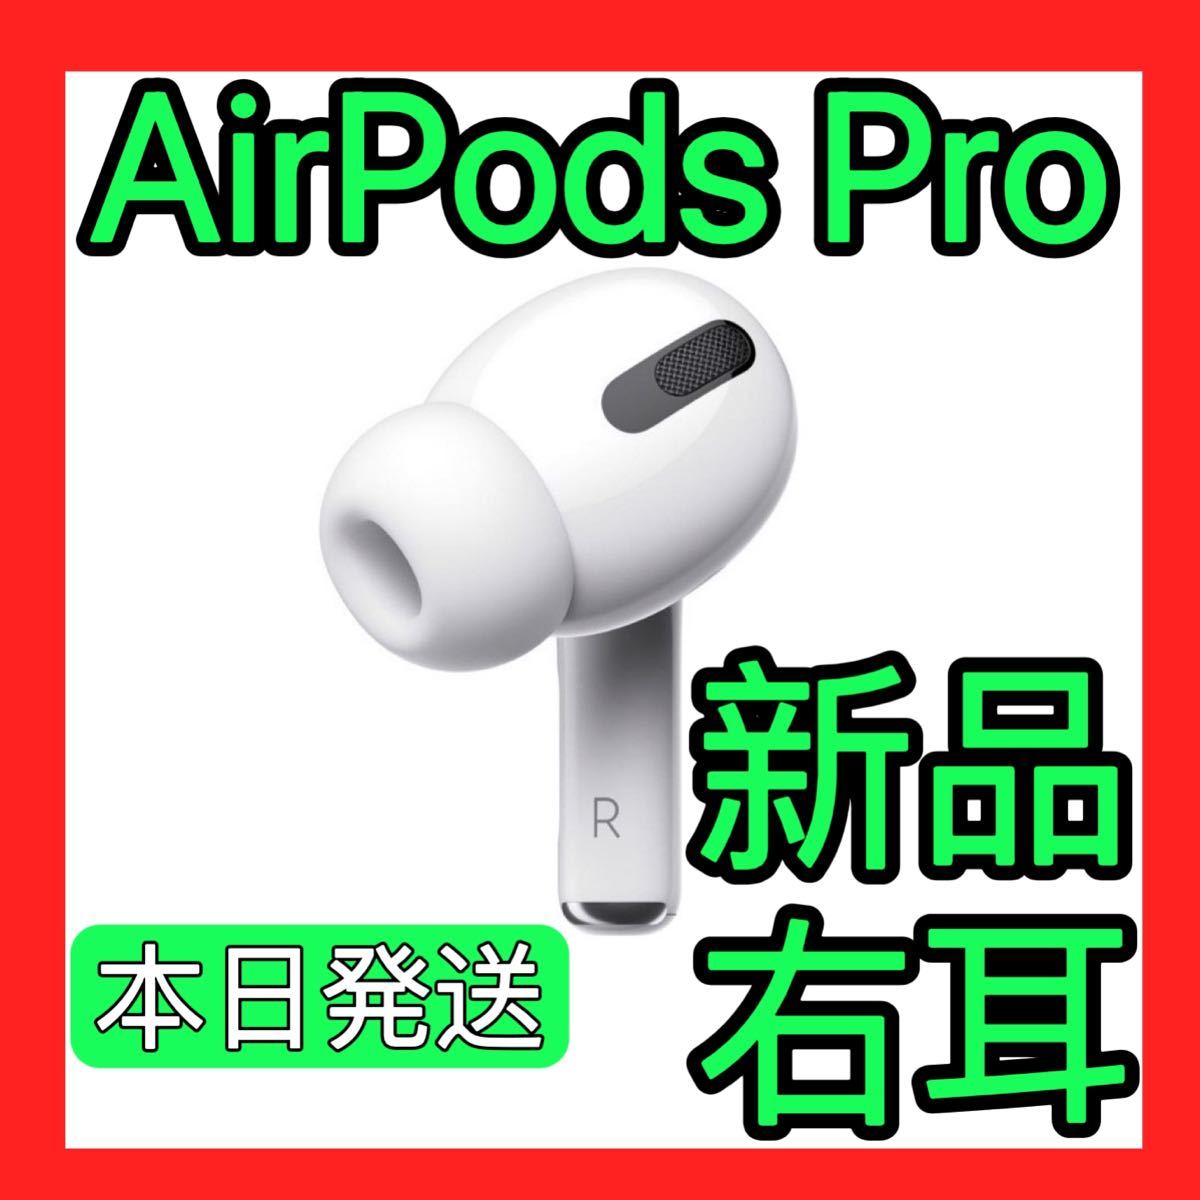 Apple純正品 AirPods Pro 右耳のみ エアーポッズプロ 片耳 R片耳 